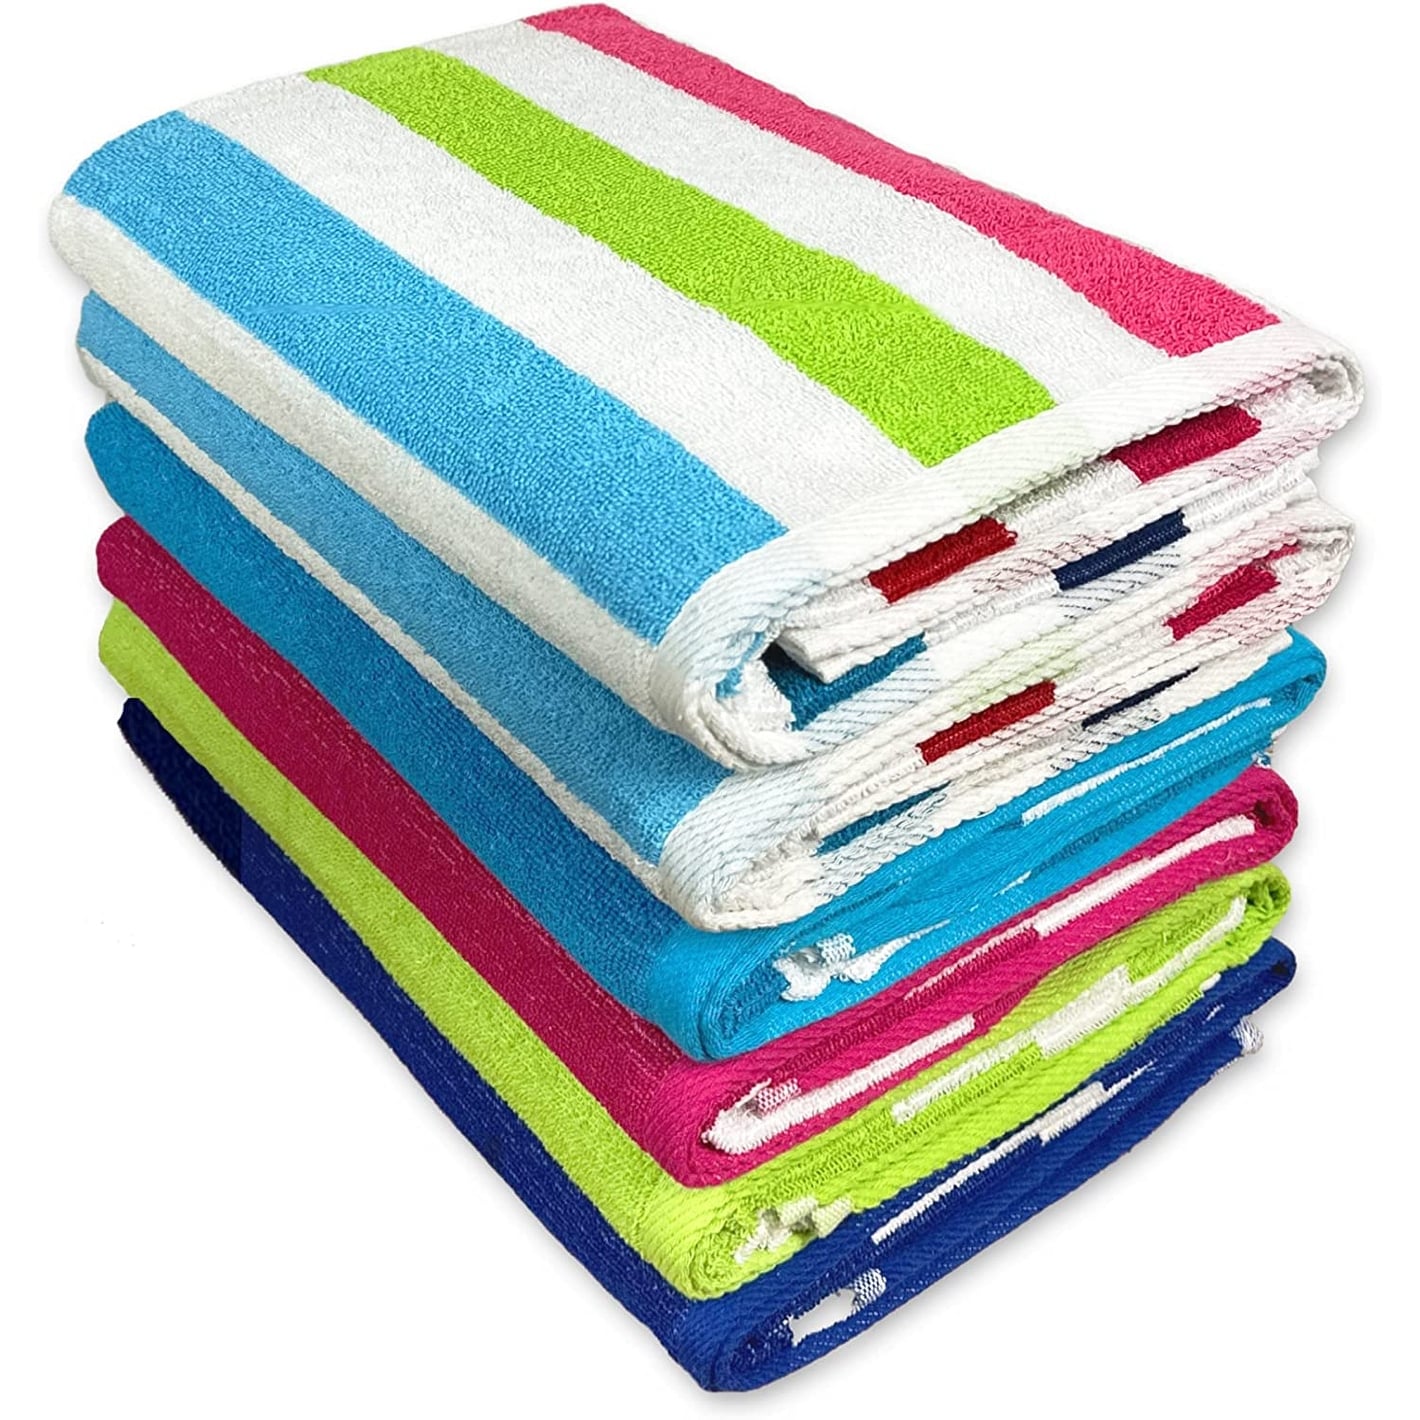 Kaufman Sales 100% Cotton Bath Towels